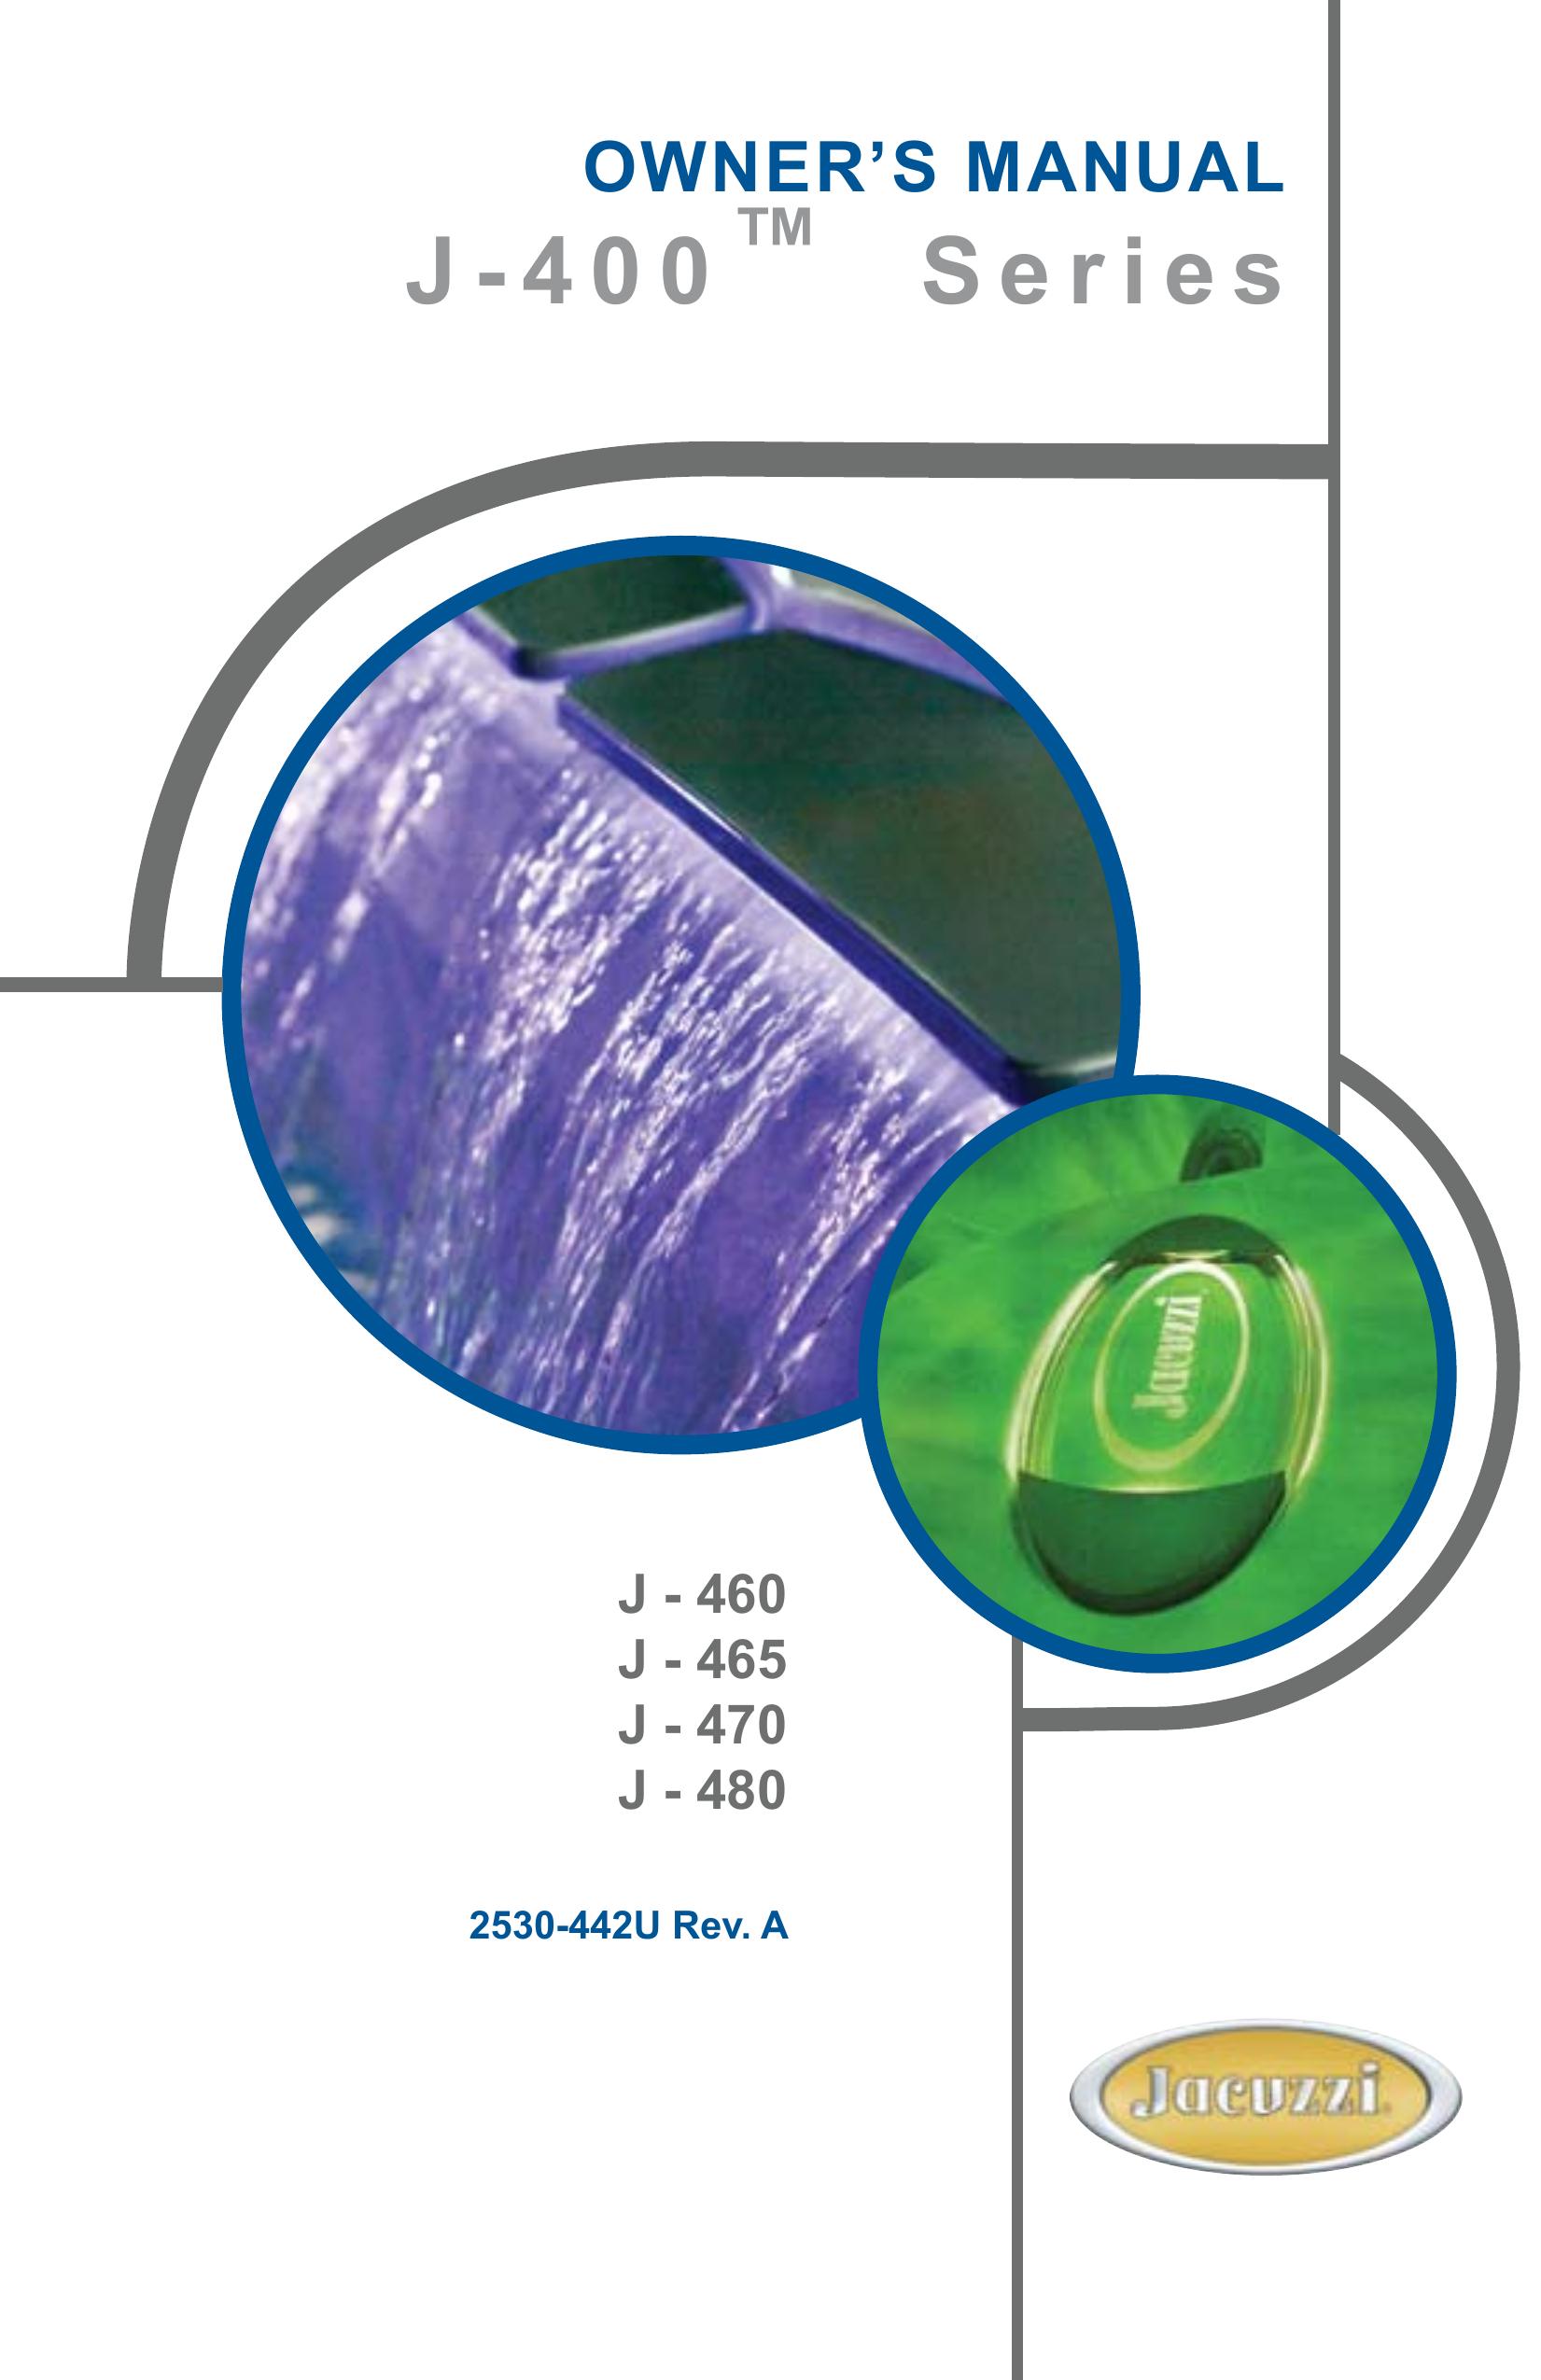 Jacuzzi J - 465 Swimming Pool Vacuum User Manual